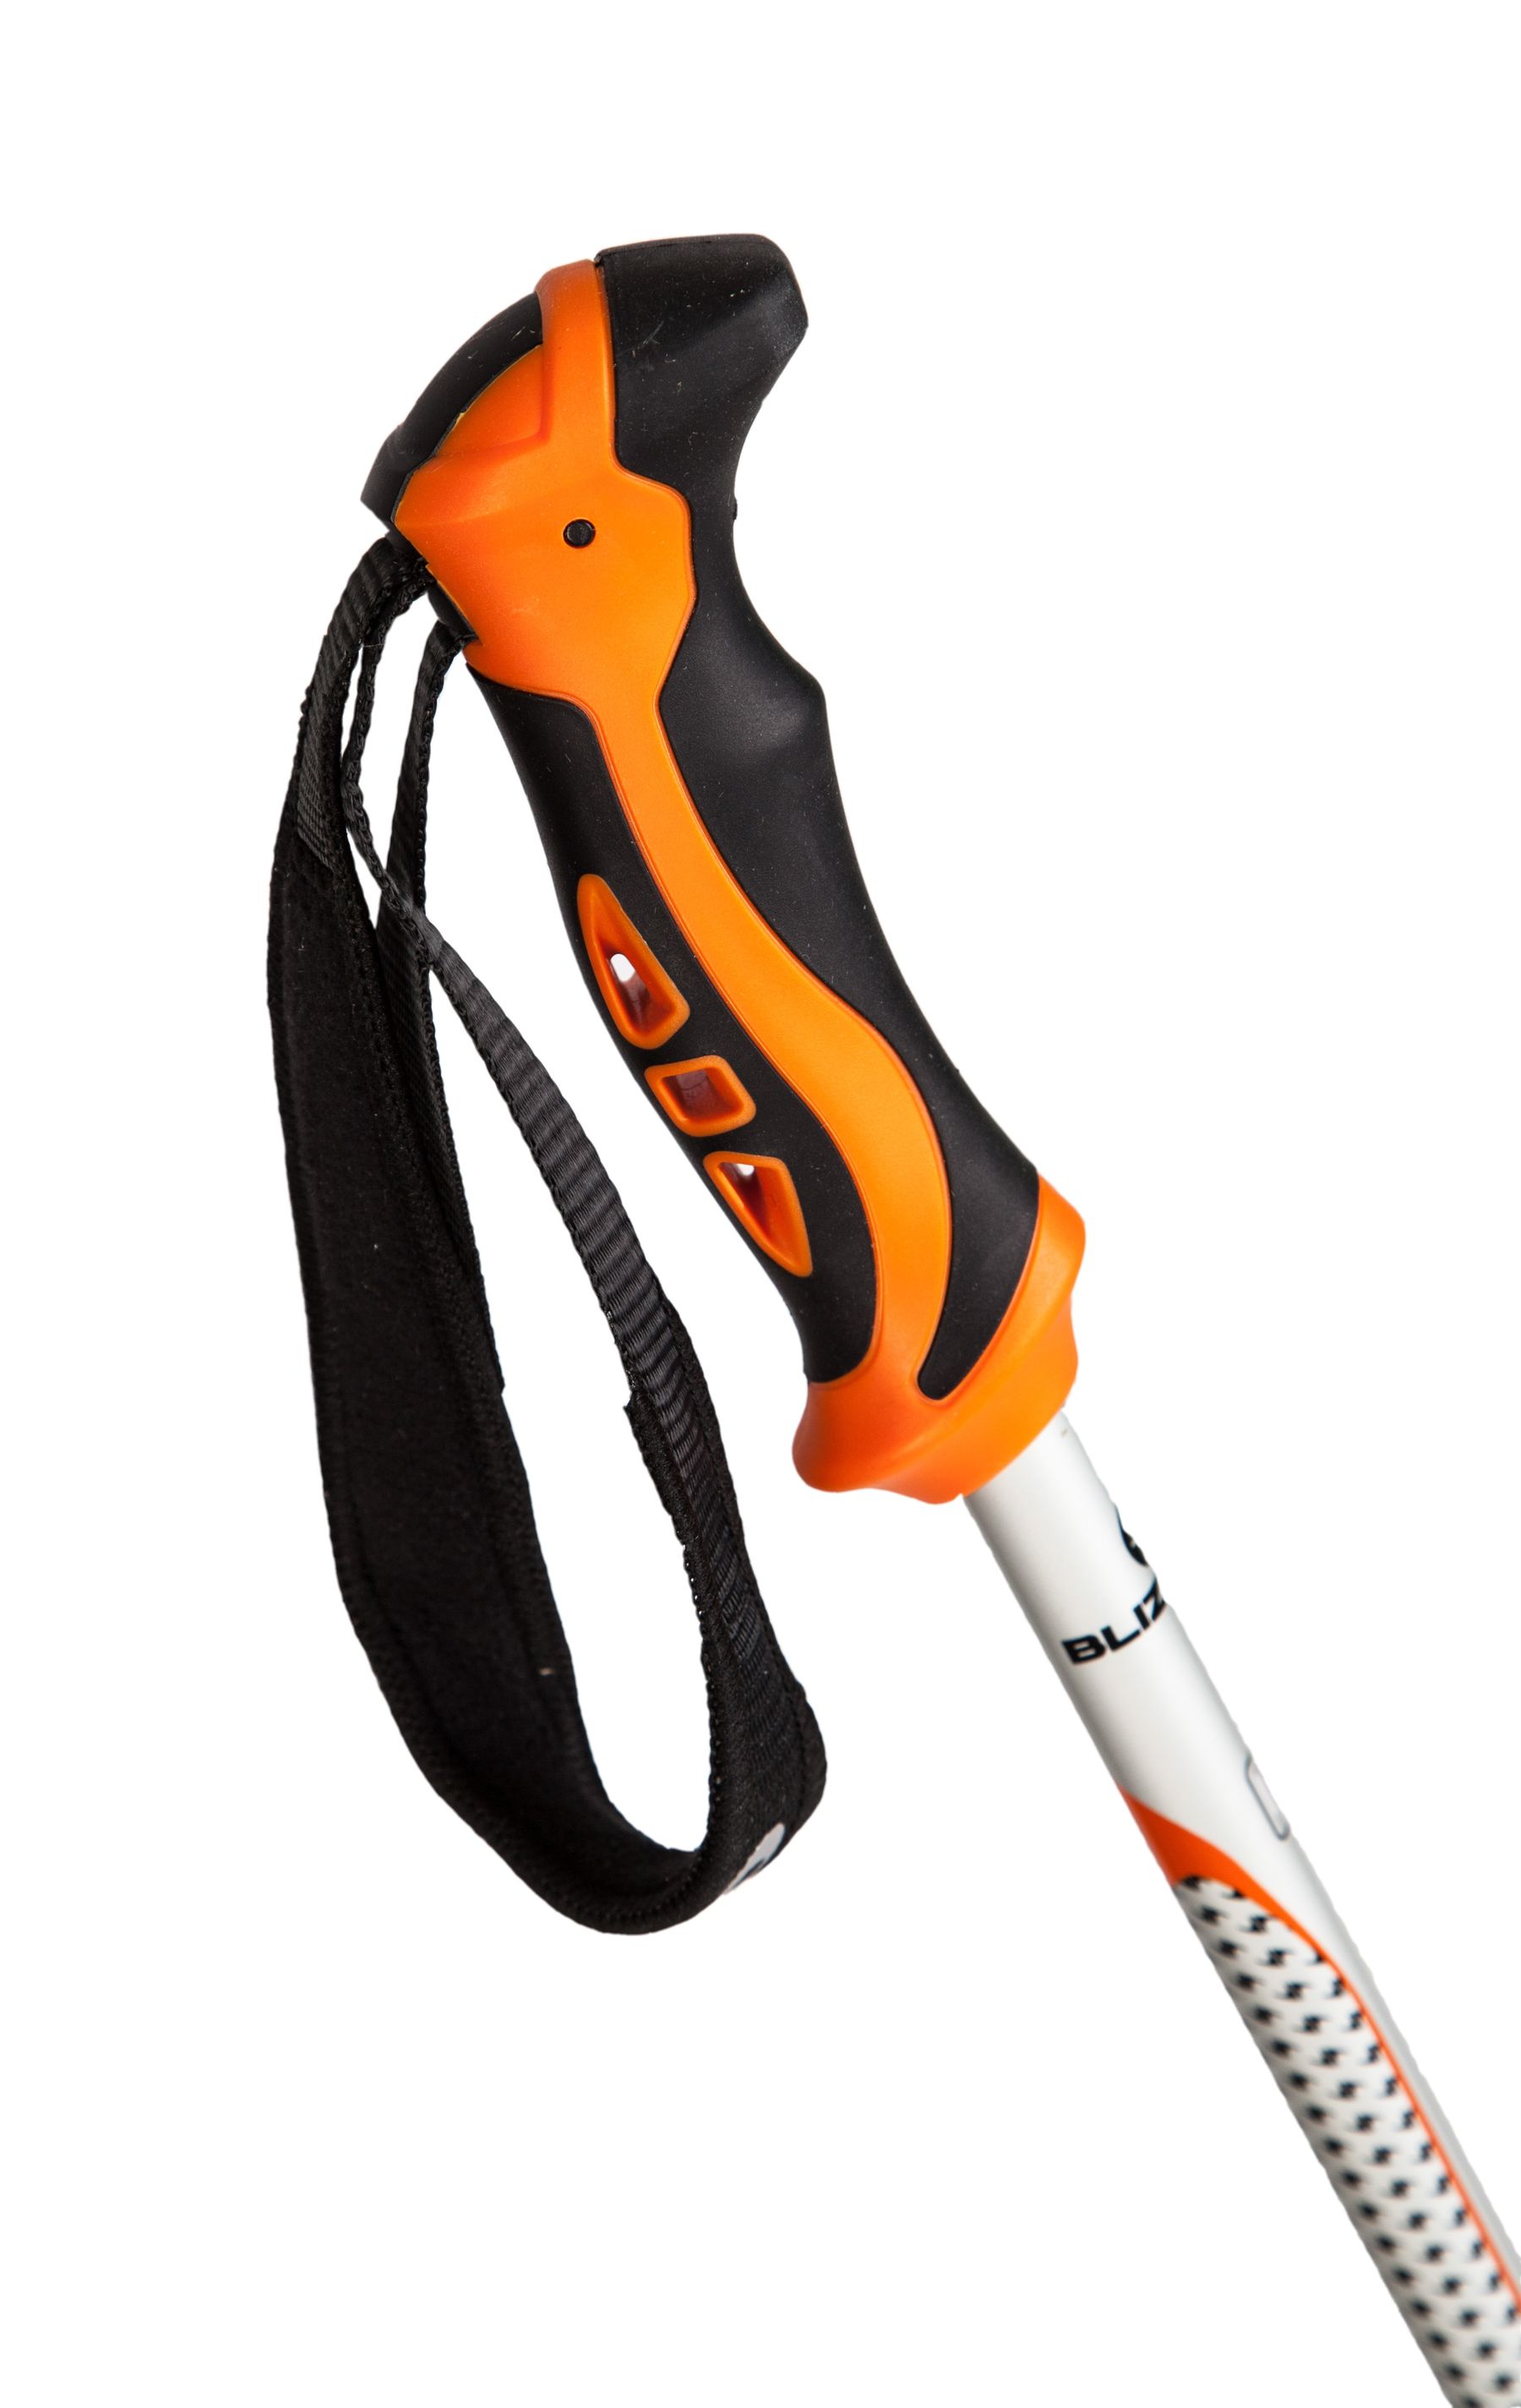 Allmountain ski poles, silver/neon orange